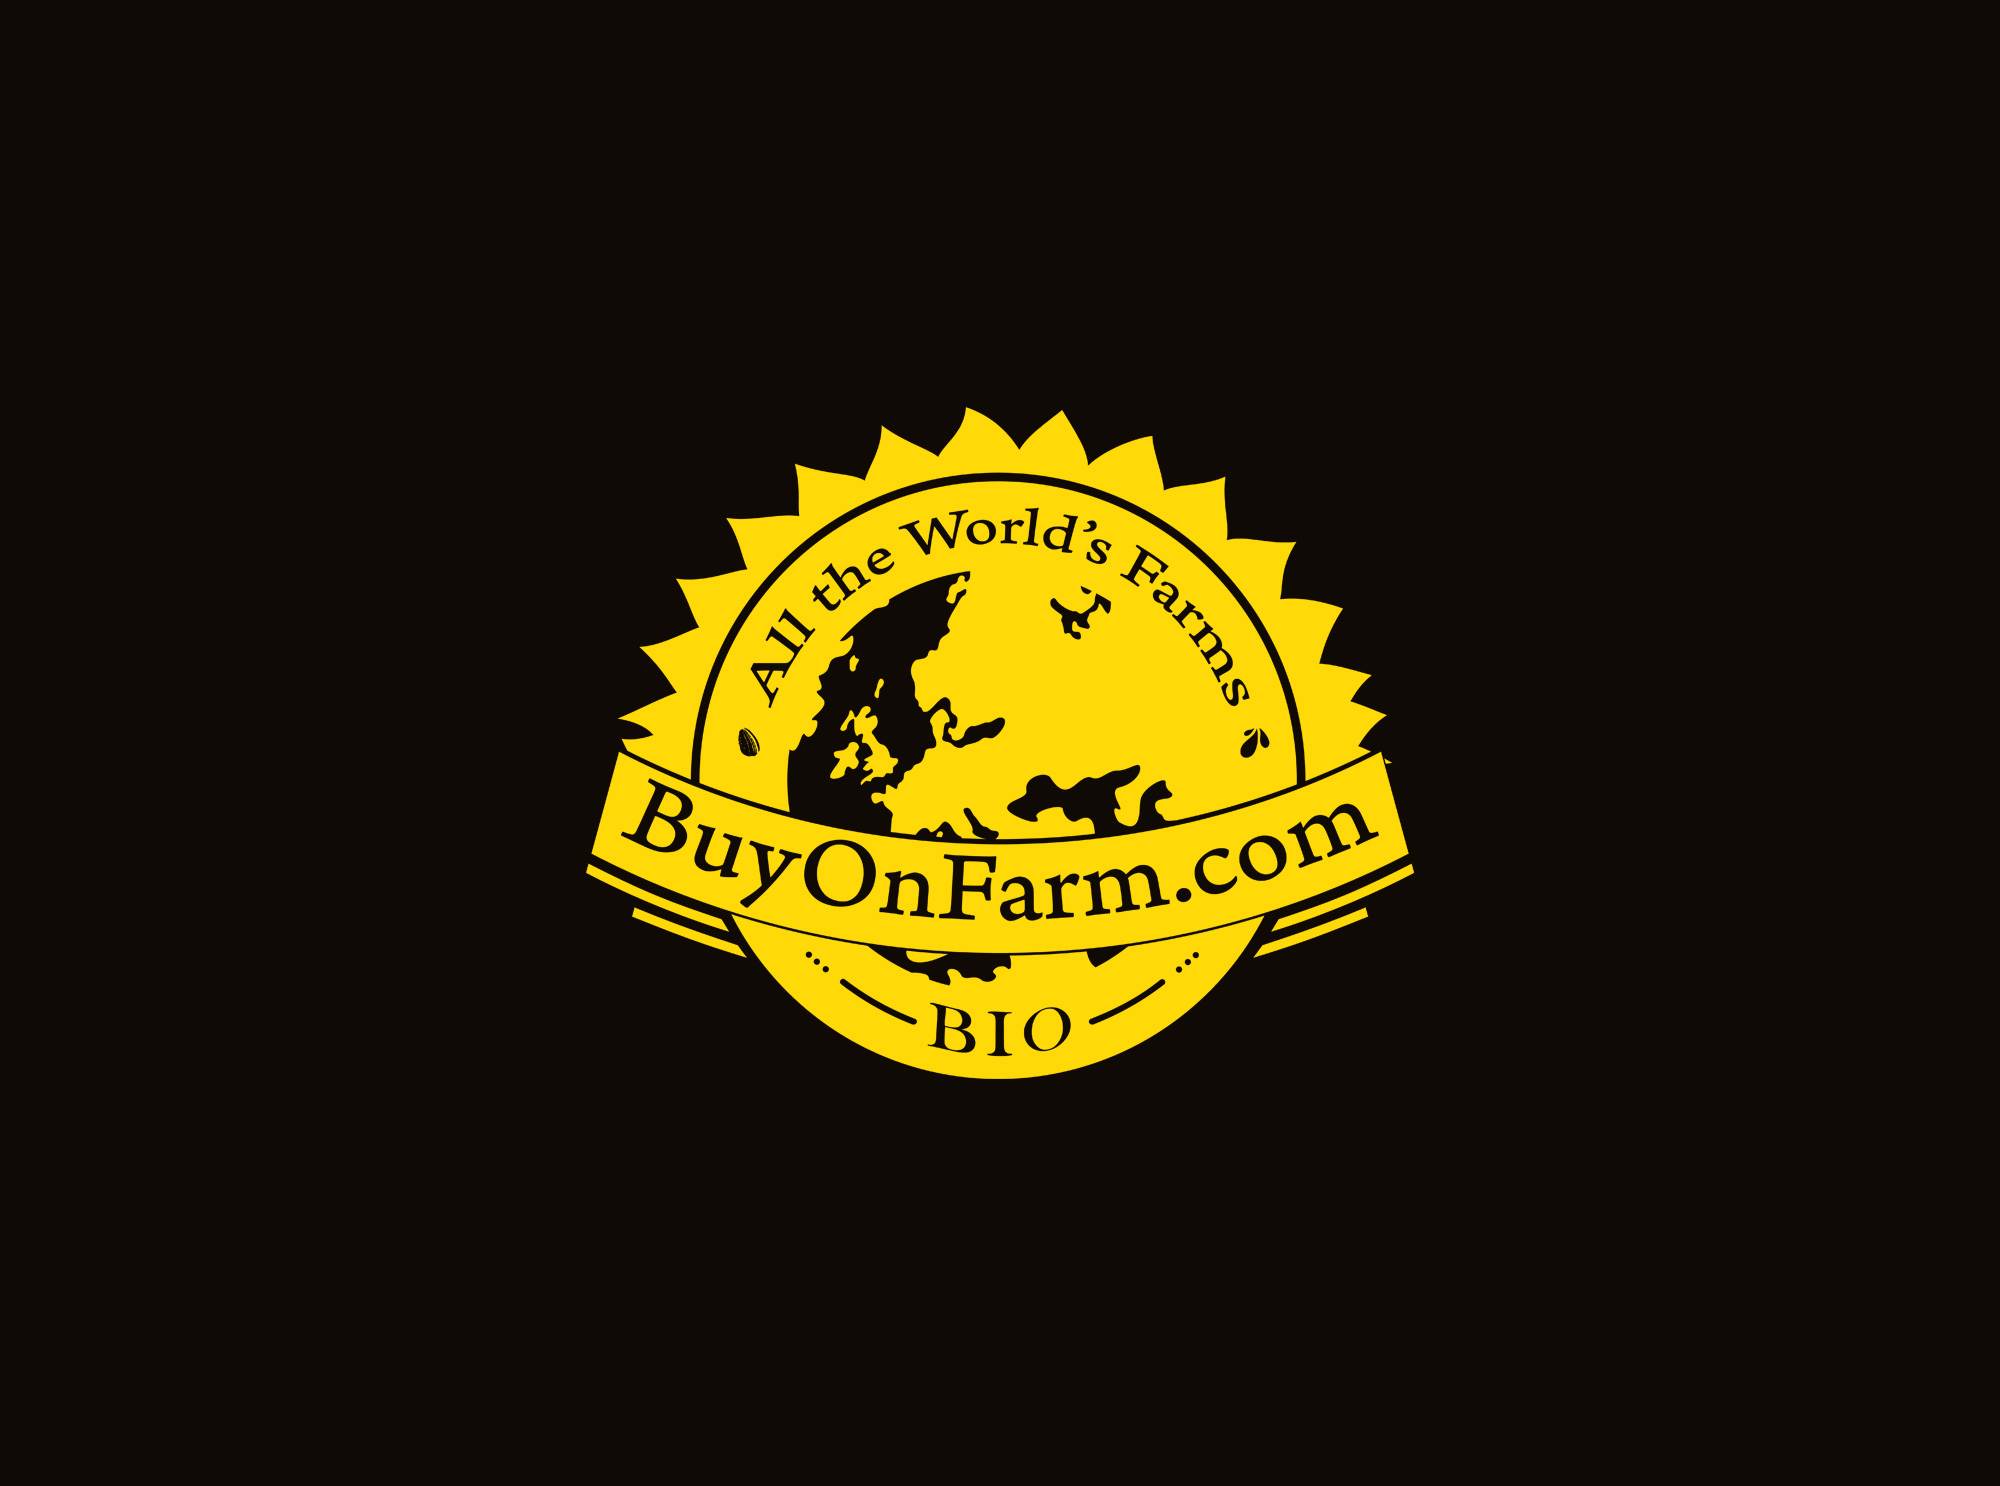 Разработка логотипа для фермерского портала в черно-белой версии